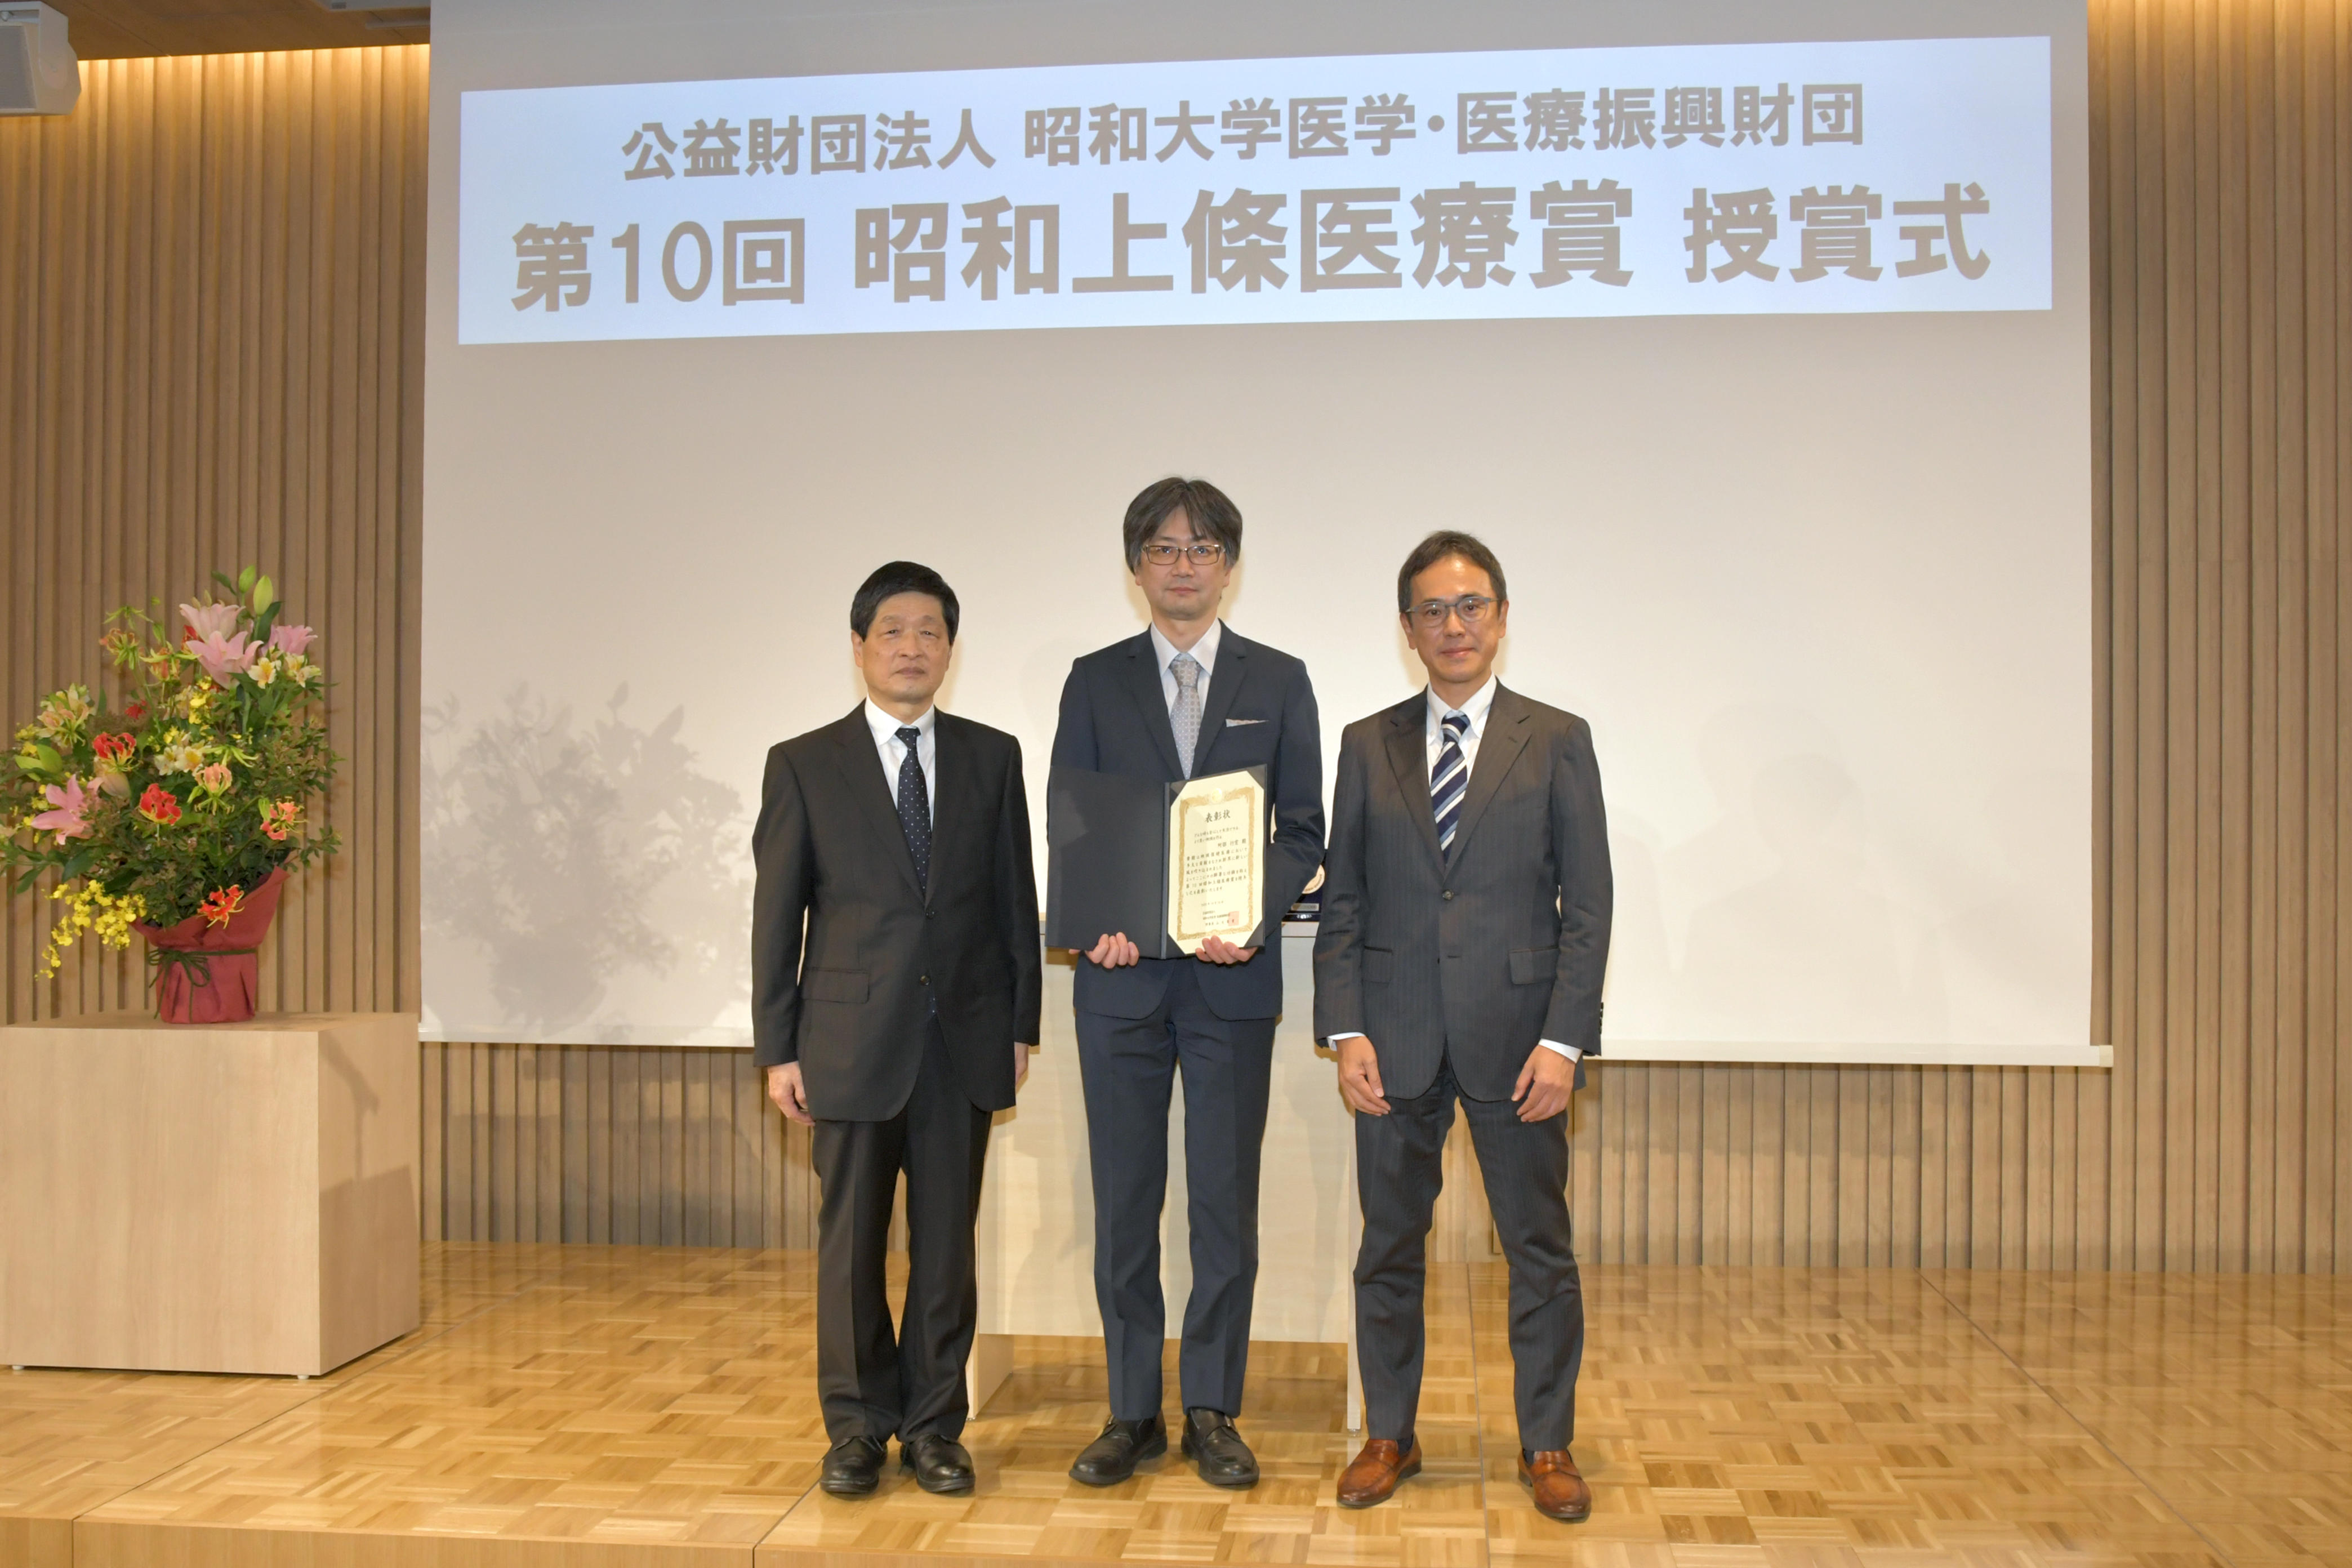 昭和大学医学・医療振興財団が第10回昭和上條医療賞の授賞式を開催